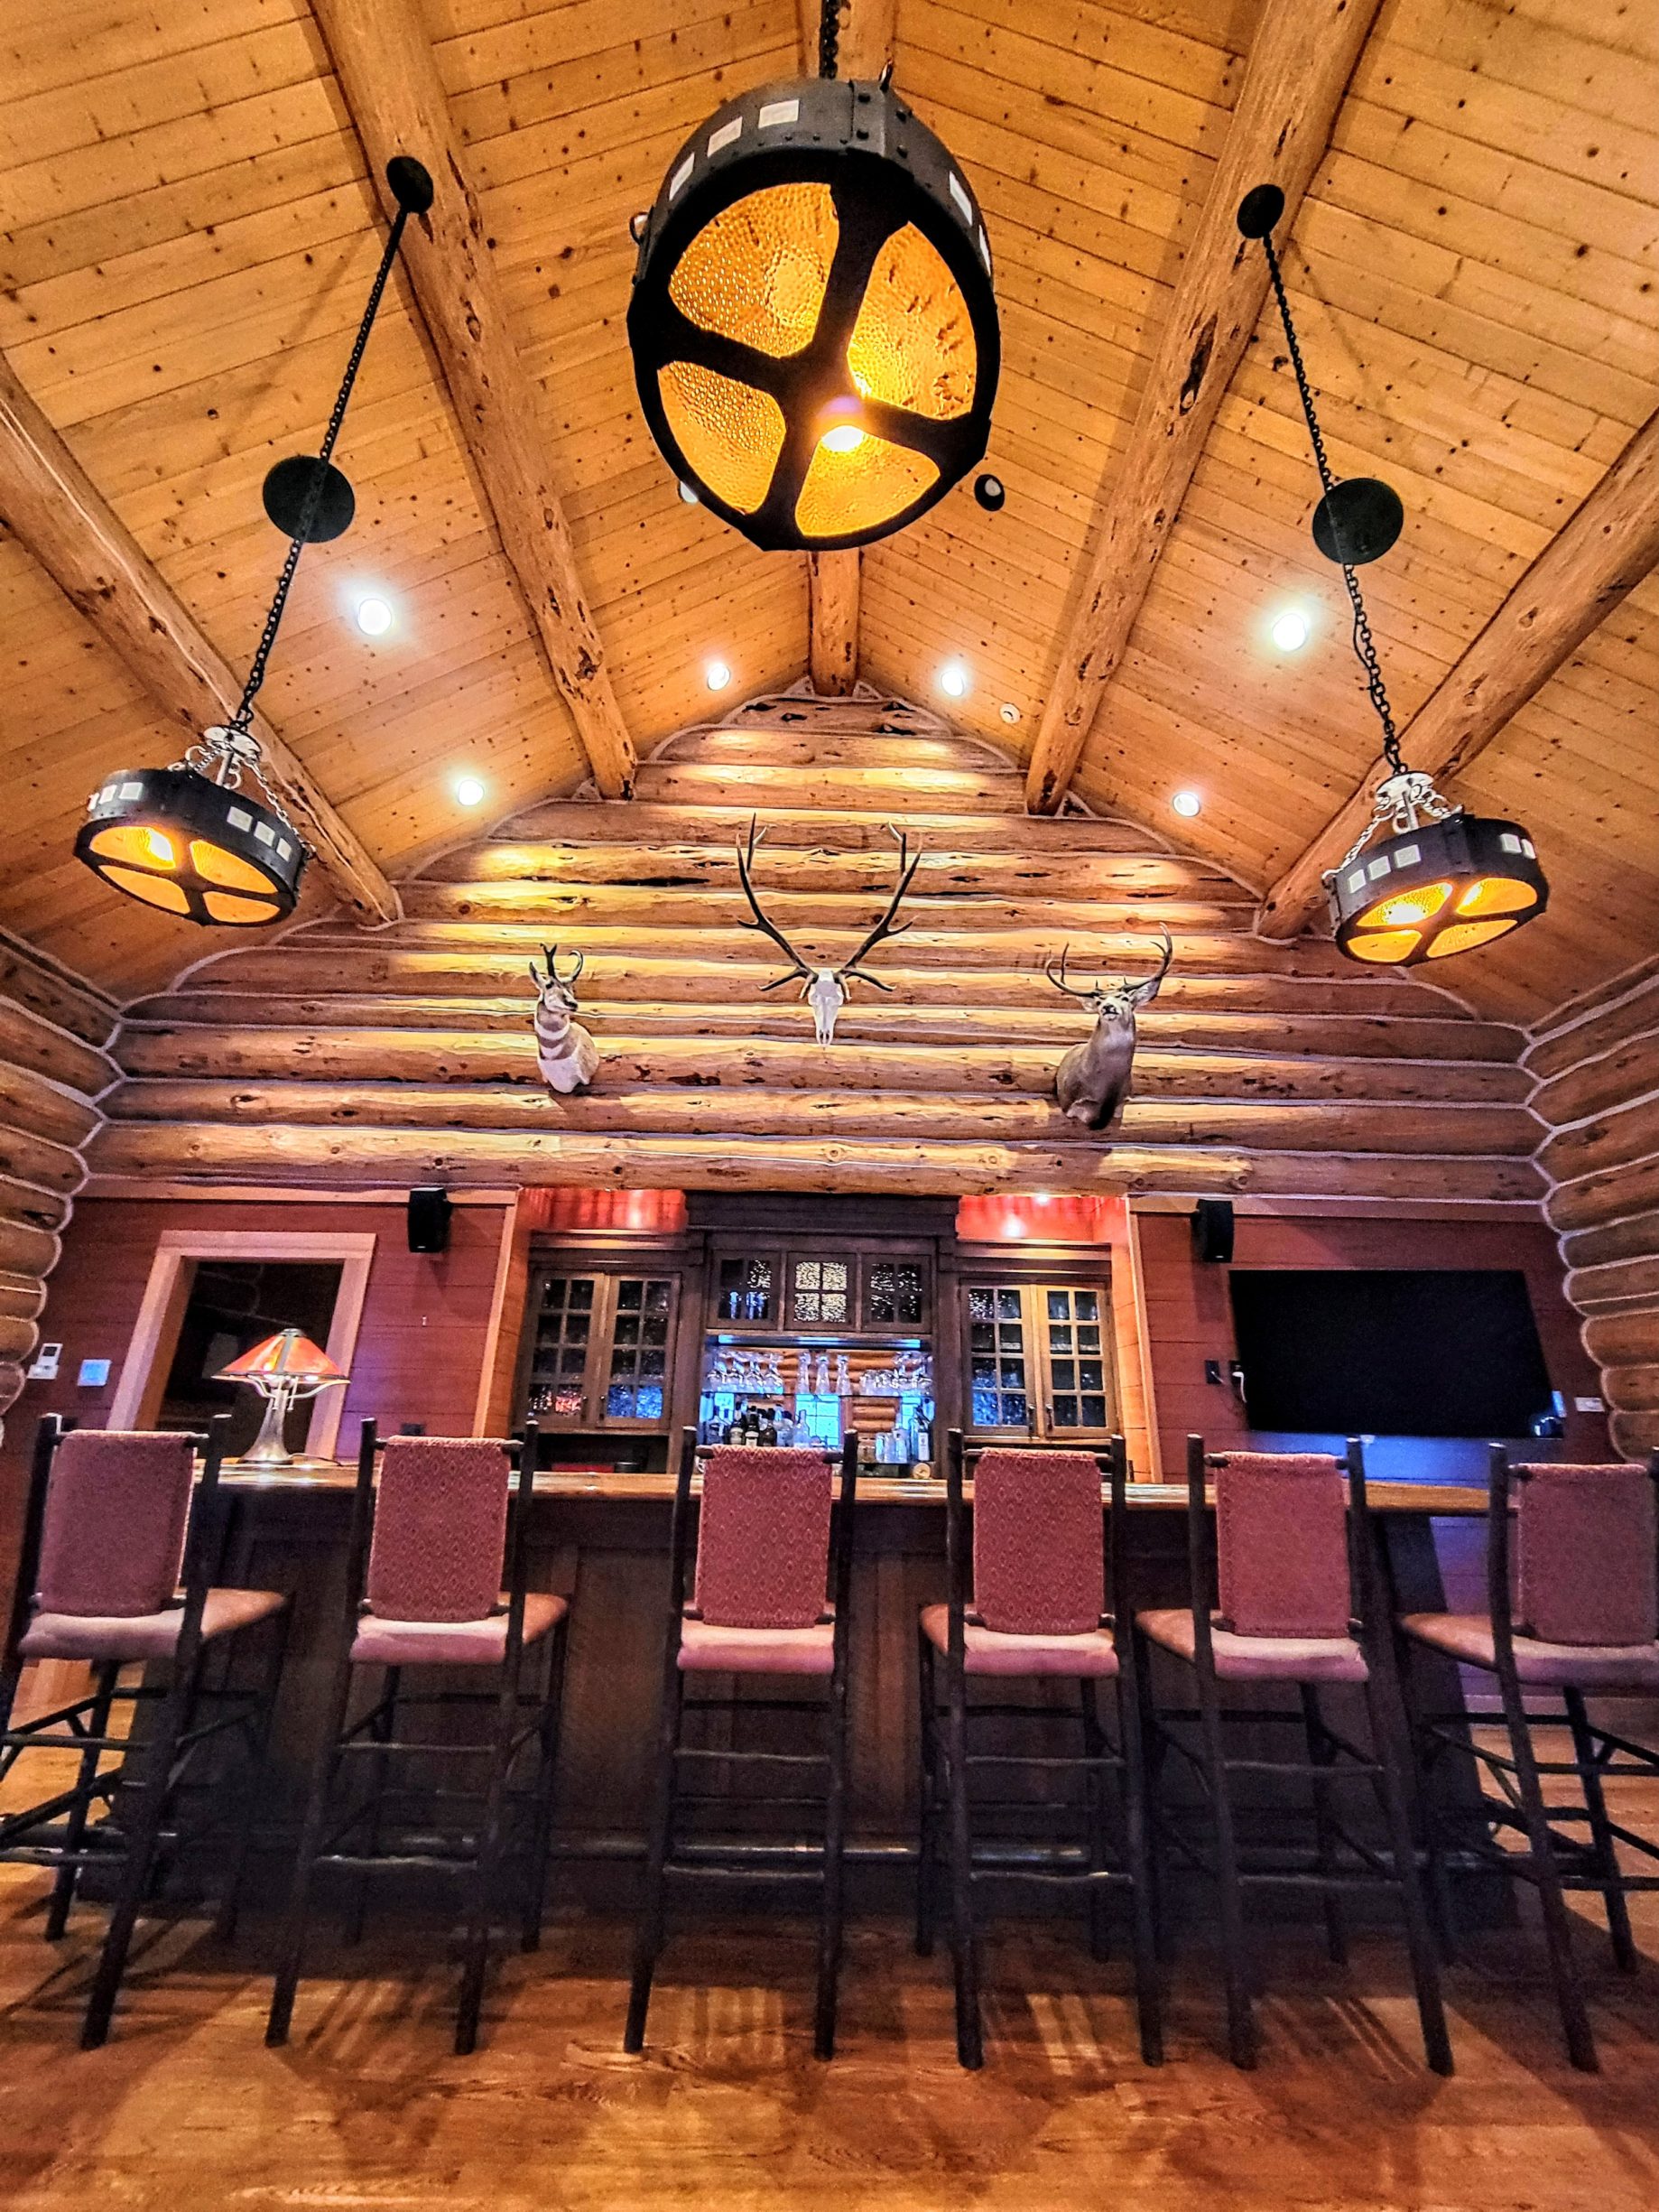 The Lodge Bar